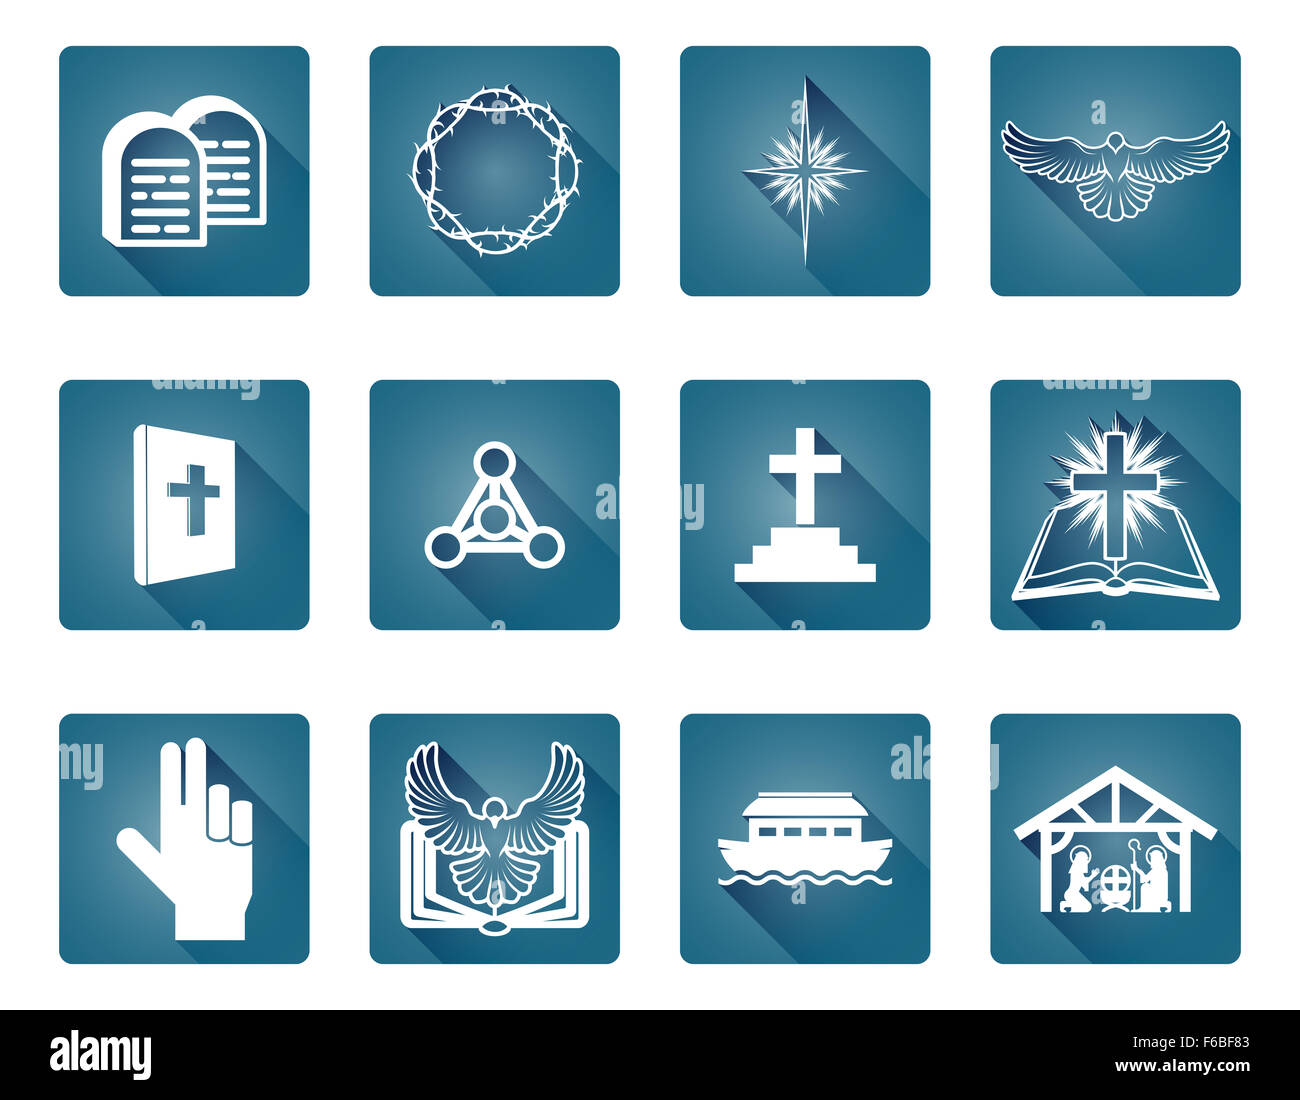 Un ensemble d'icônes et symboles religieux chrétiens y compris étoile de Bethléem, croix et colombe blanche Banque D'Images